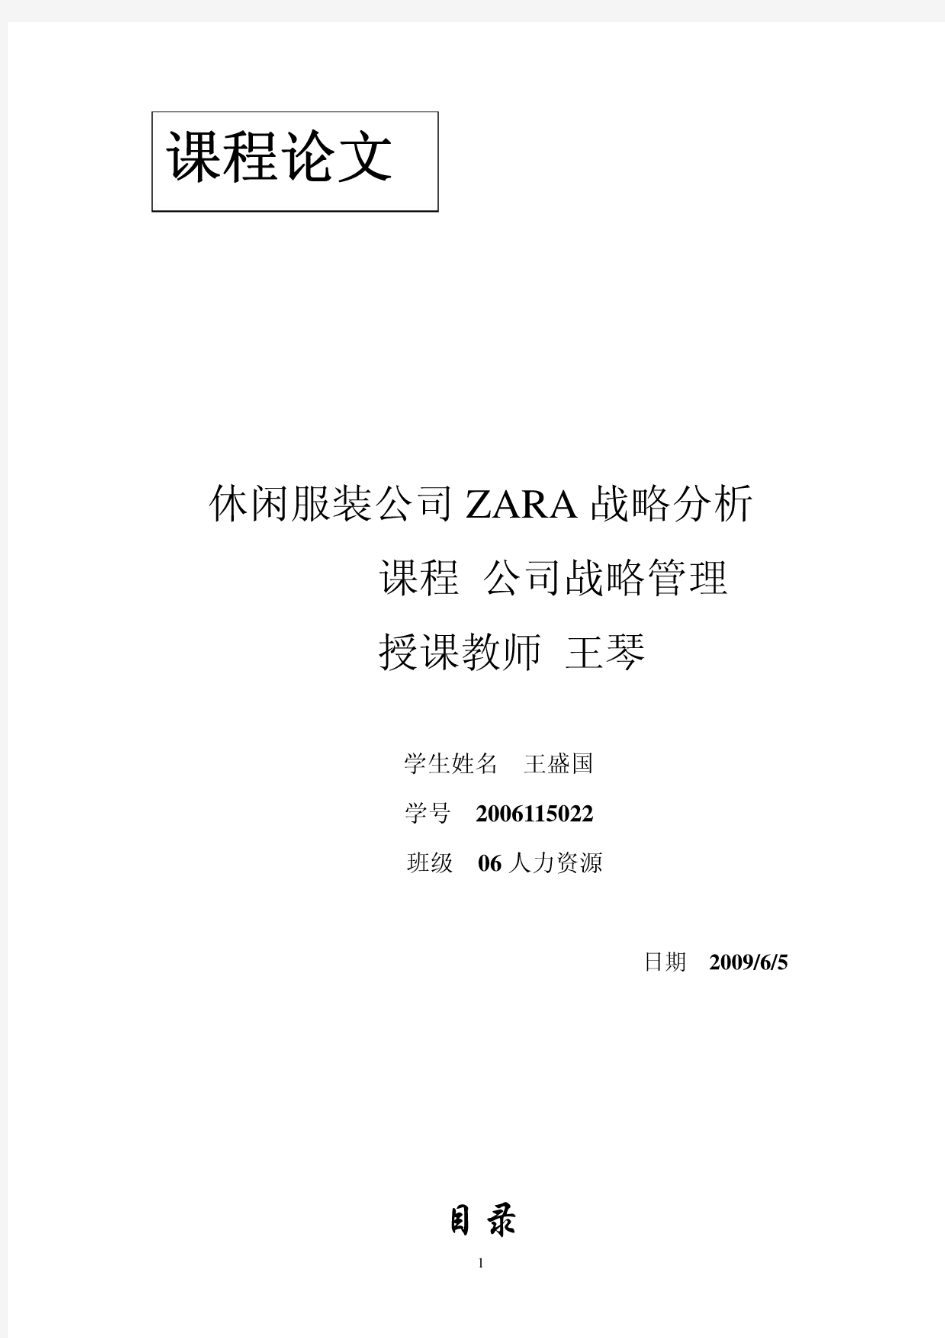 ZARA服装公司战略分析